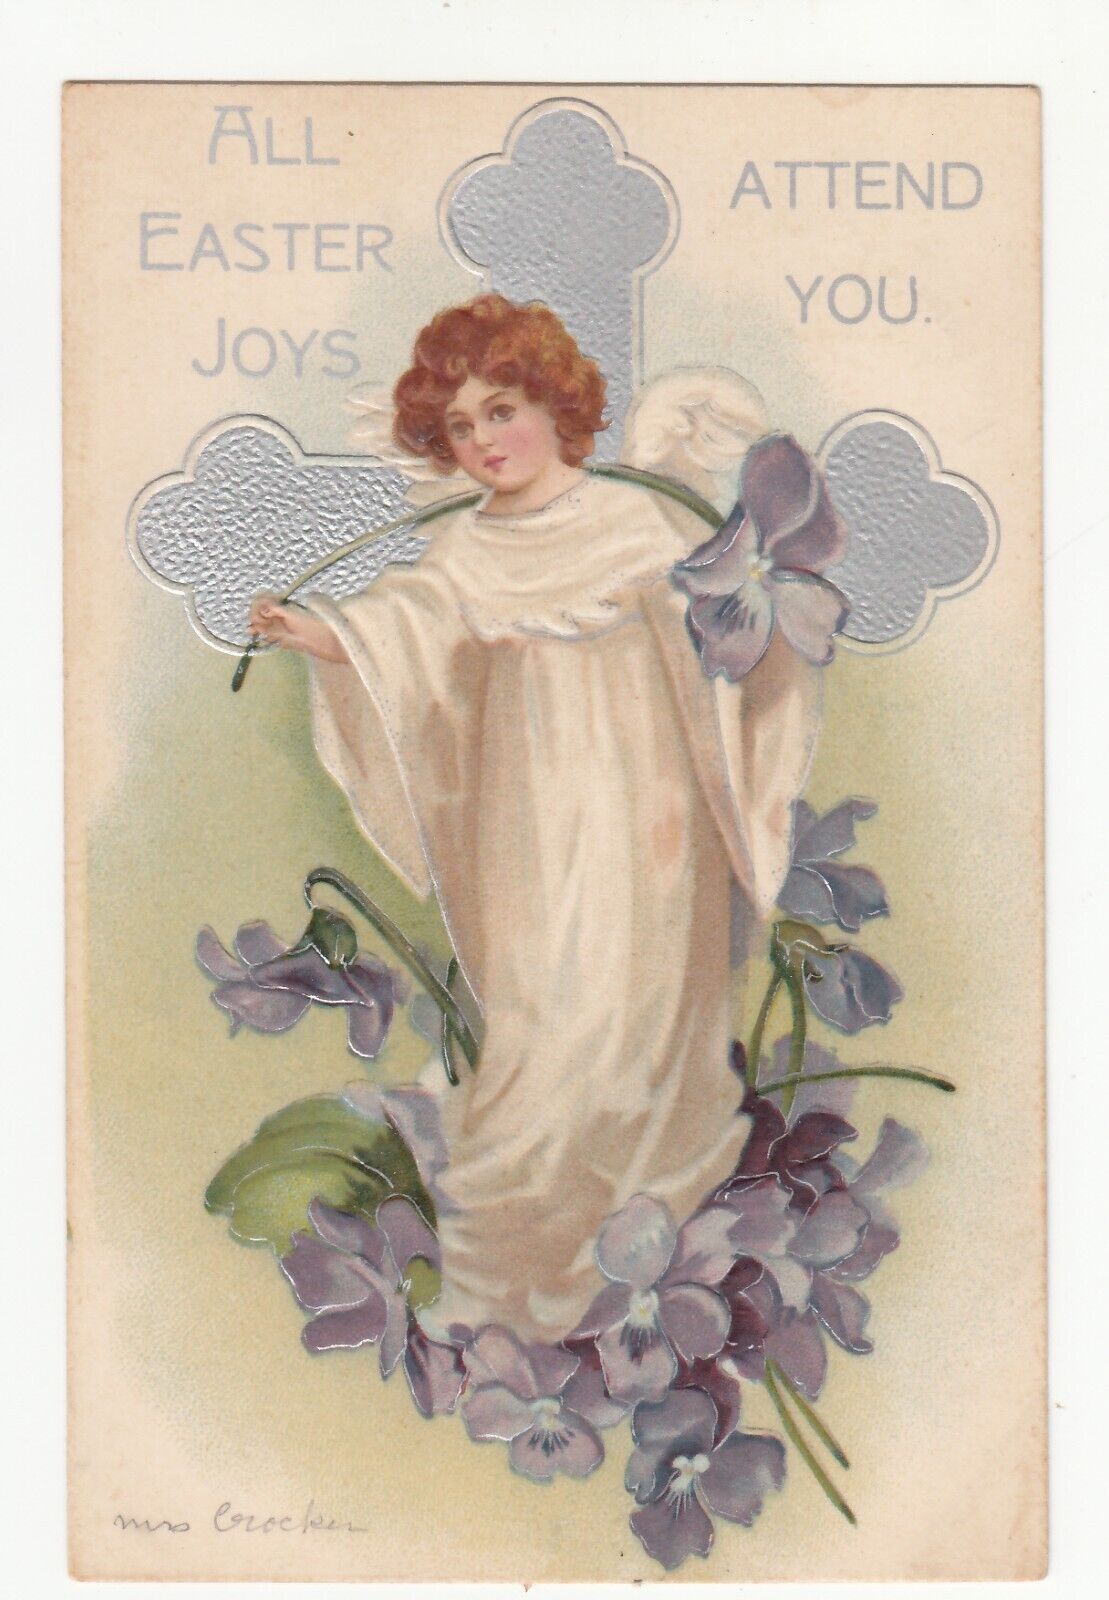 ALL EASTER JOYS ATTEND YOU.  Girl, Cross, Flowers 1908 International Art Ser 612